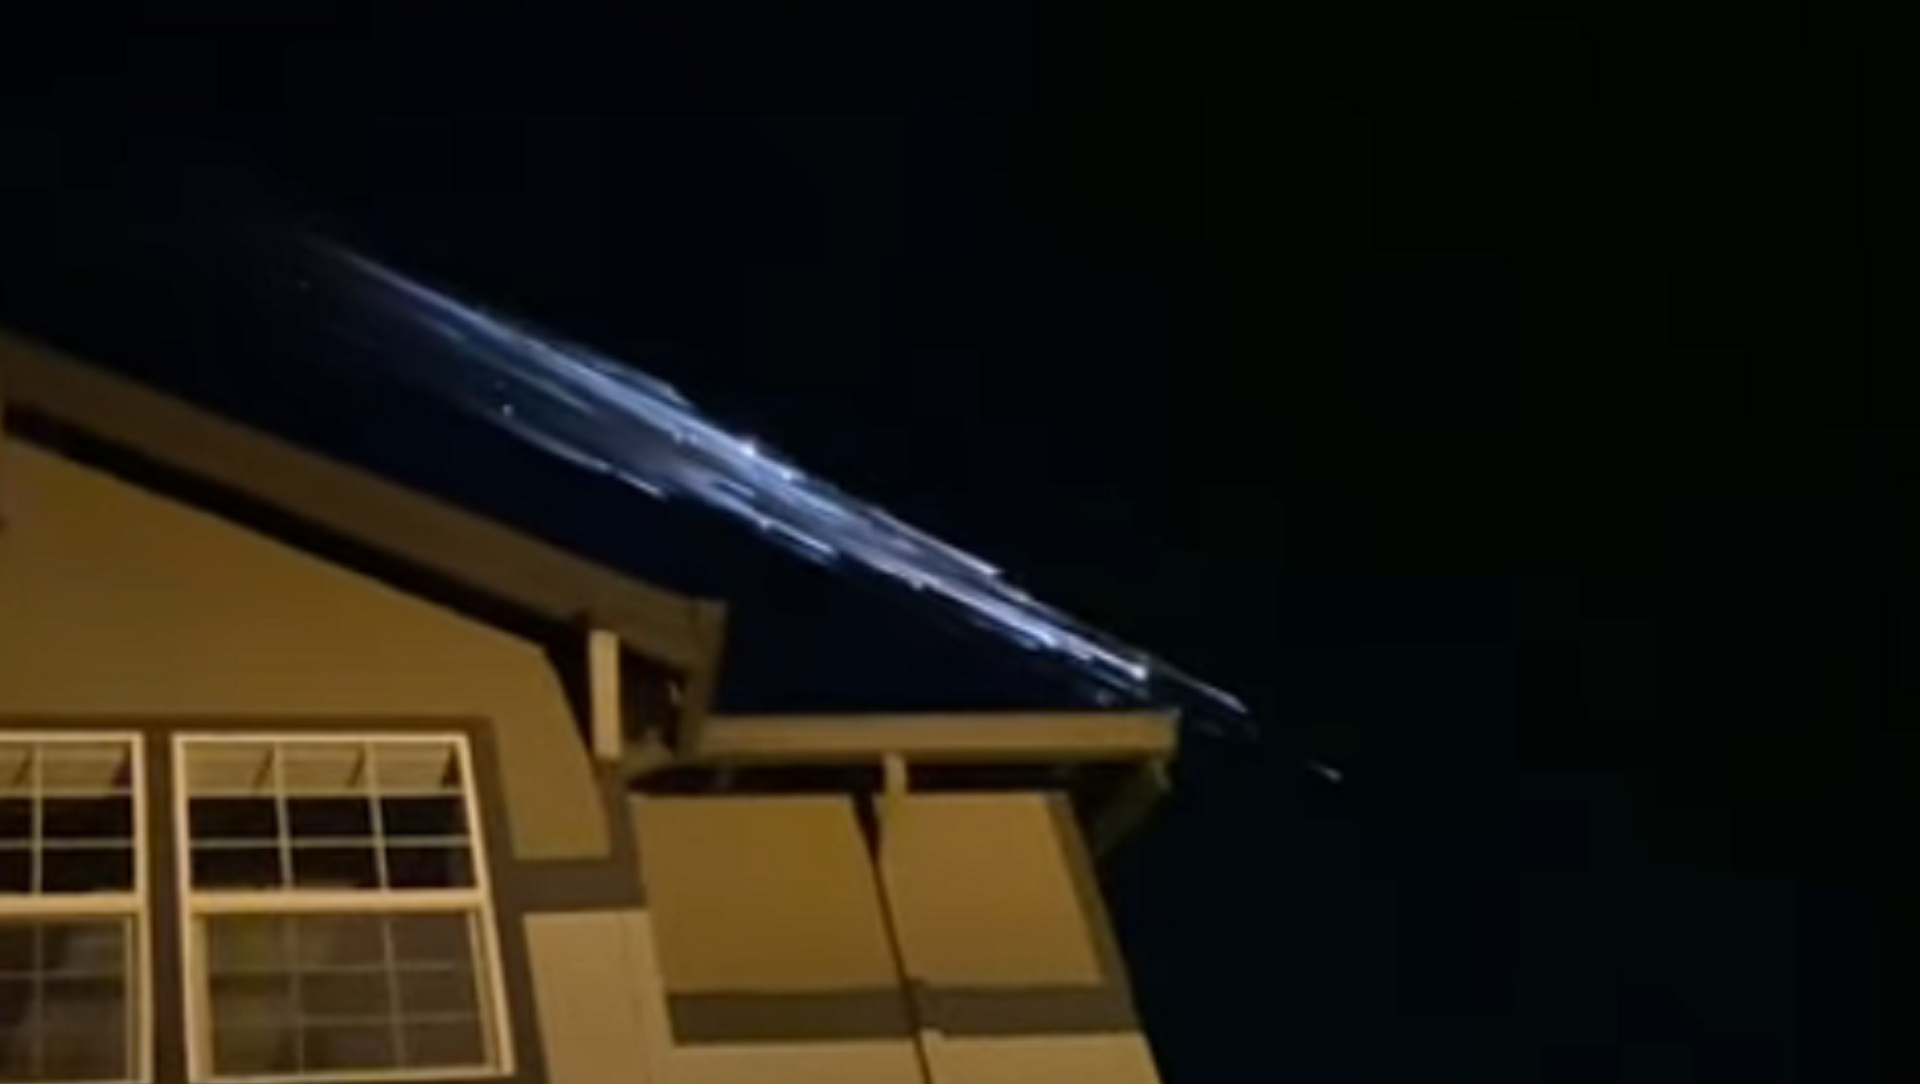 オレゴン州の夜空に現れた光 - Sputnik 日本, 1920, 31.03.2021